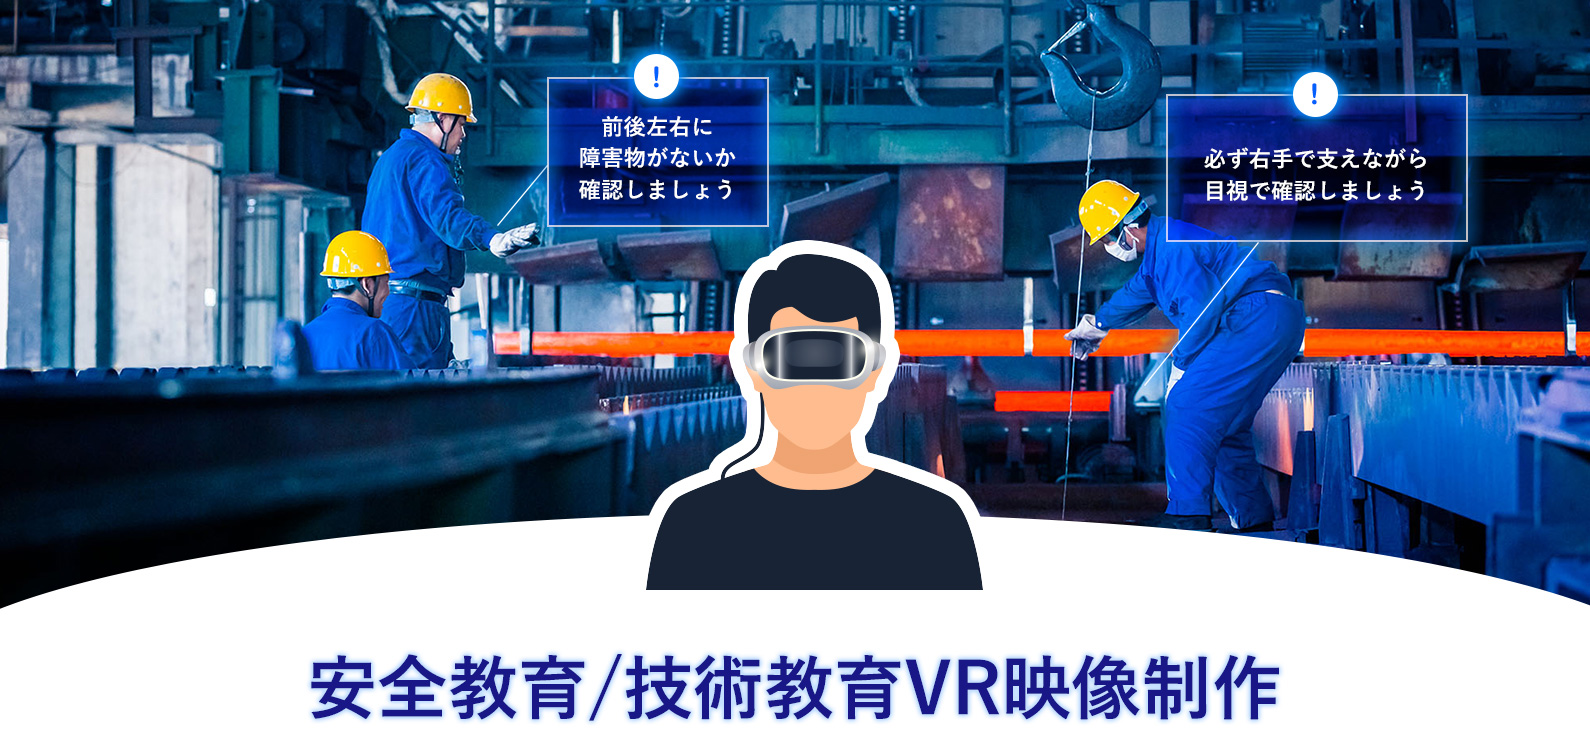 安全教育/技術教育VR映像制作